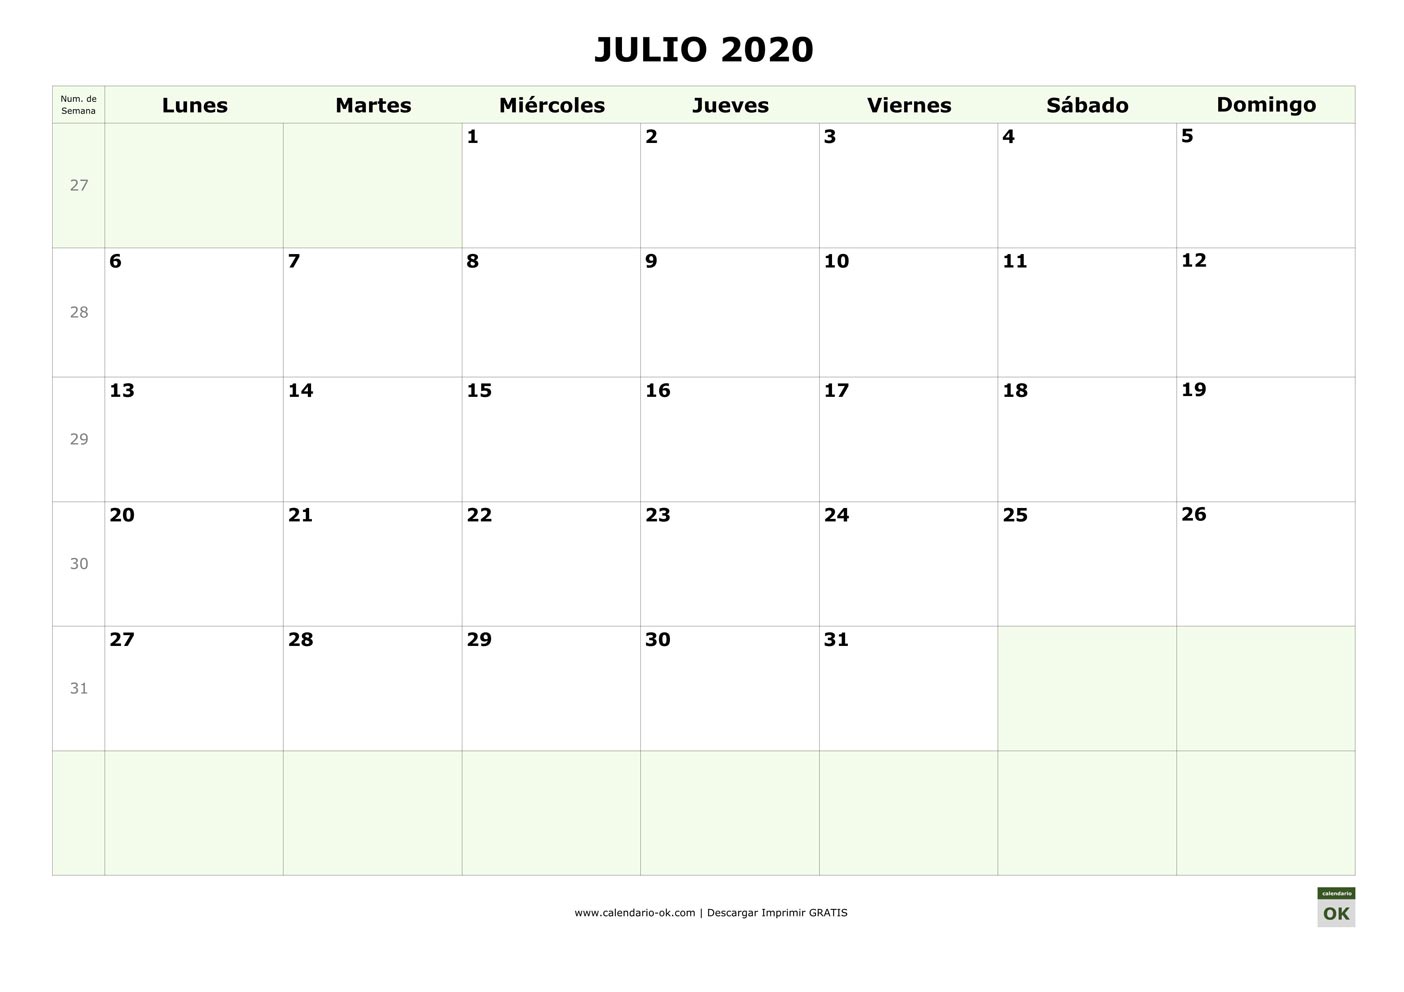 JULIO 2020 con Numero de Semana